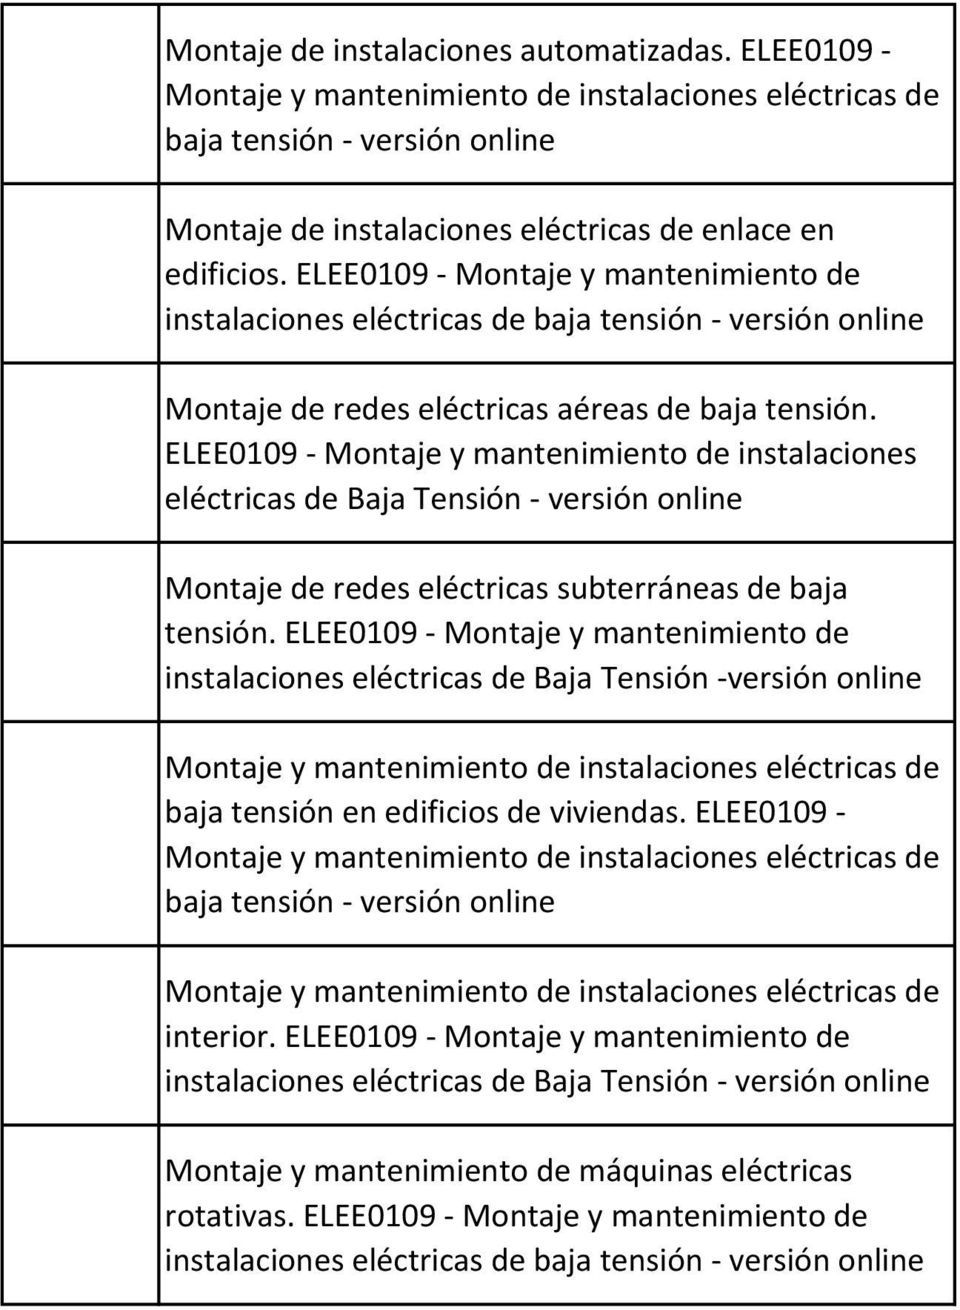 ELEE0109 - Montaje y mantenimiento de instalaciones eléctricas de Baja Tensión - Montaje de redes eléctricas subterráneas de baja tensión.